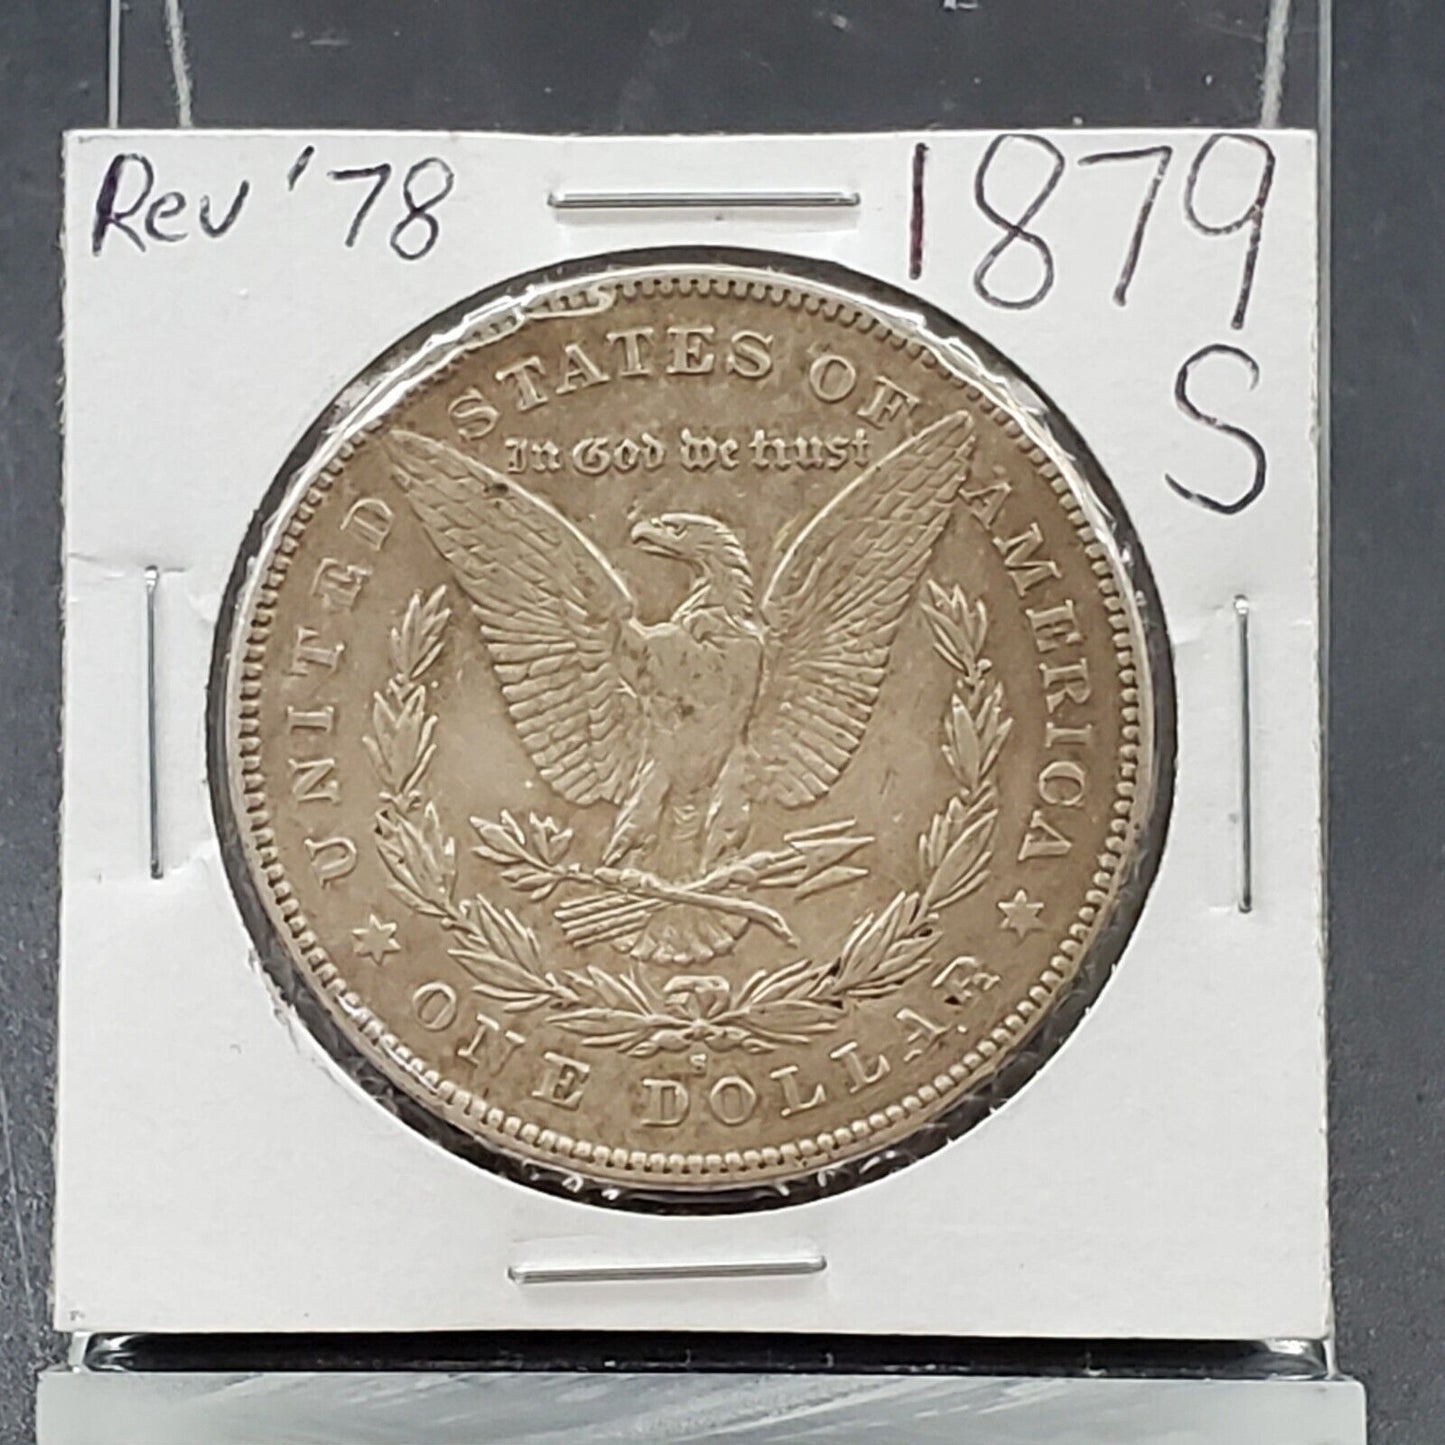 1879 S Rev 78 Morgan Silver Eagle Dollar Coin  EF XF Extra Fine